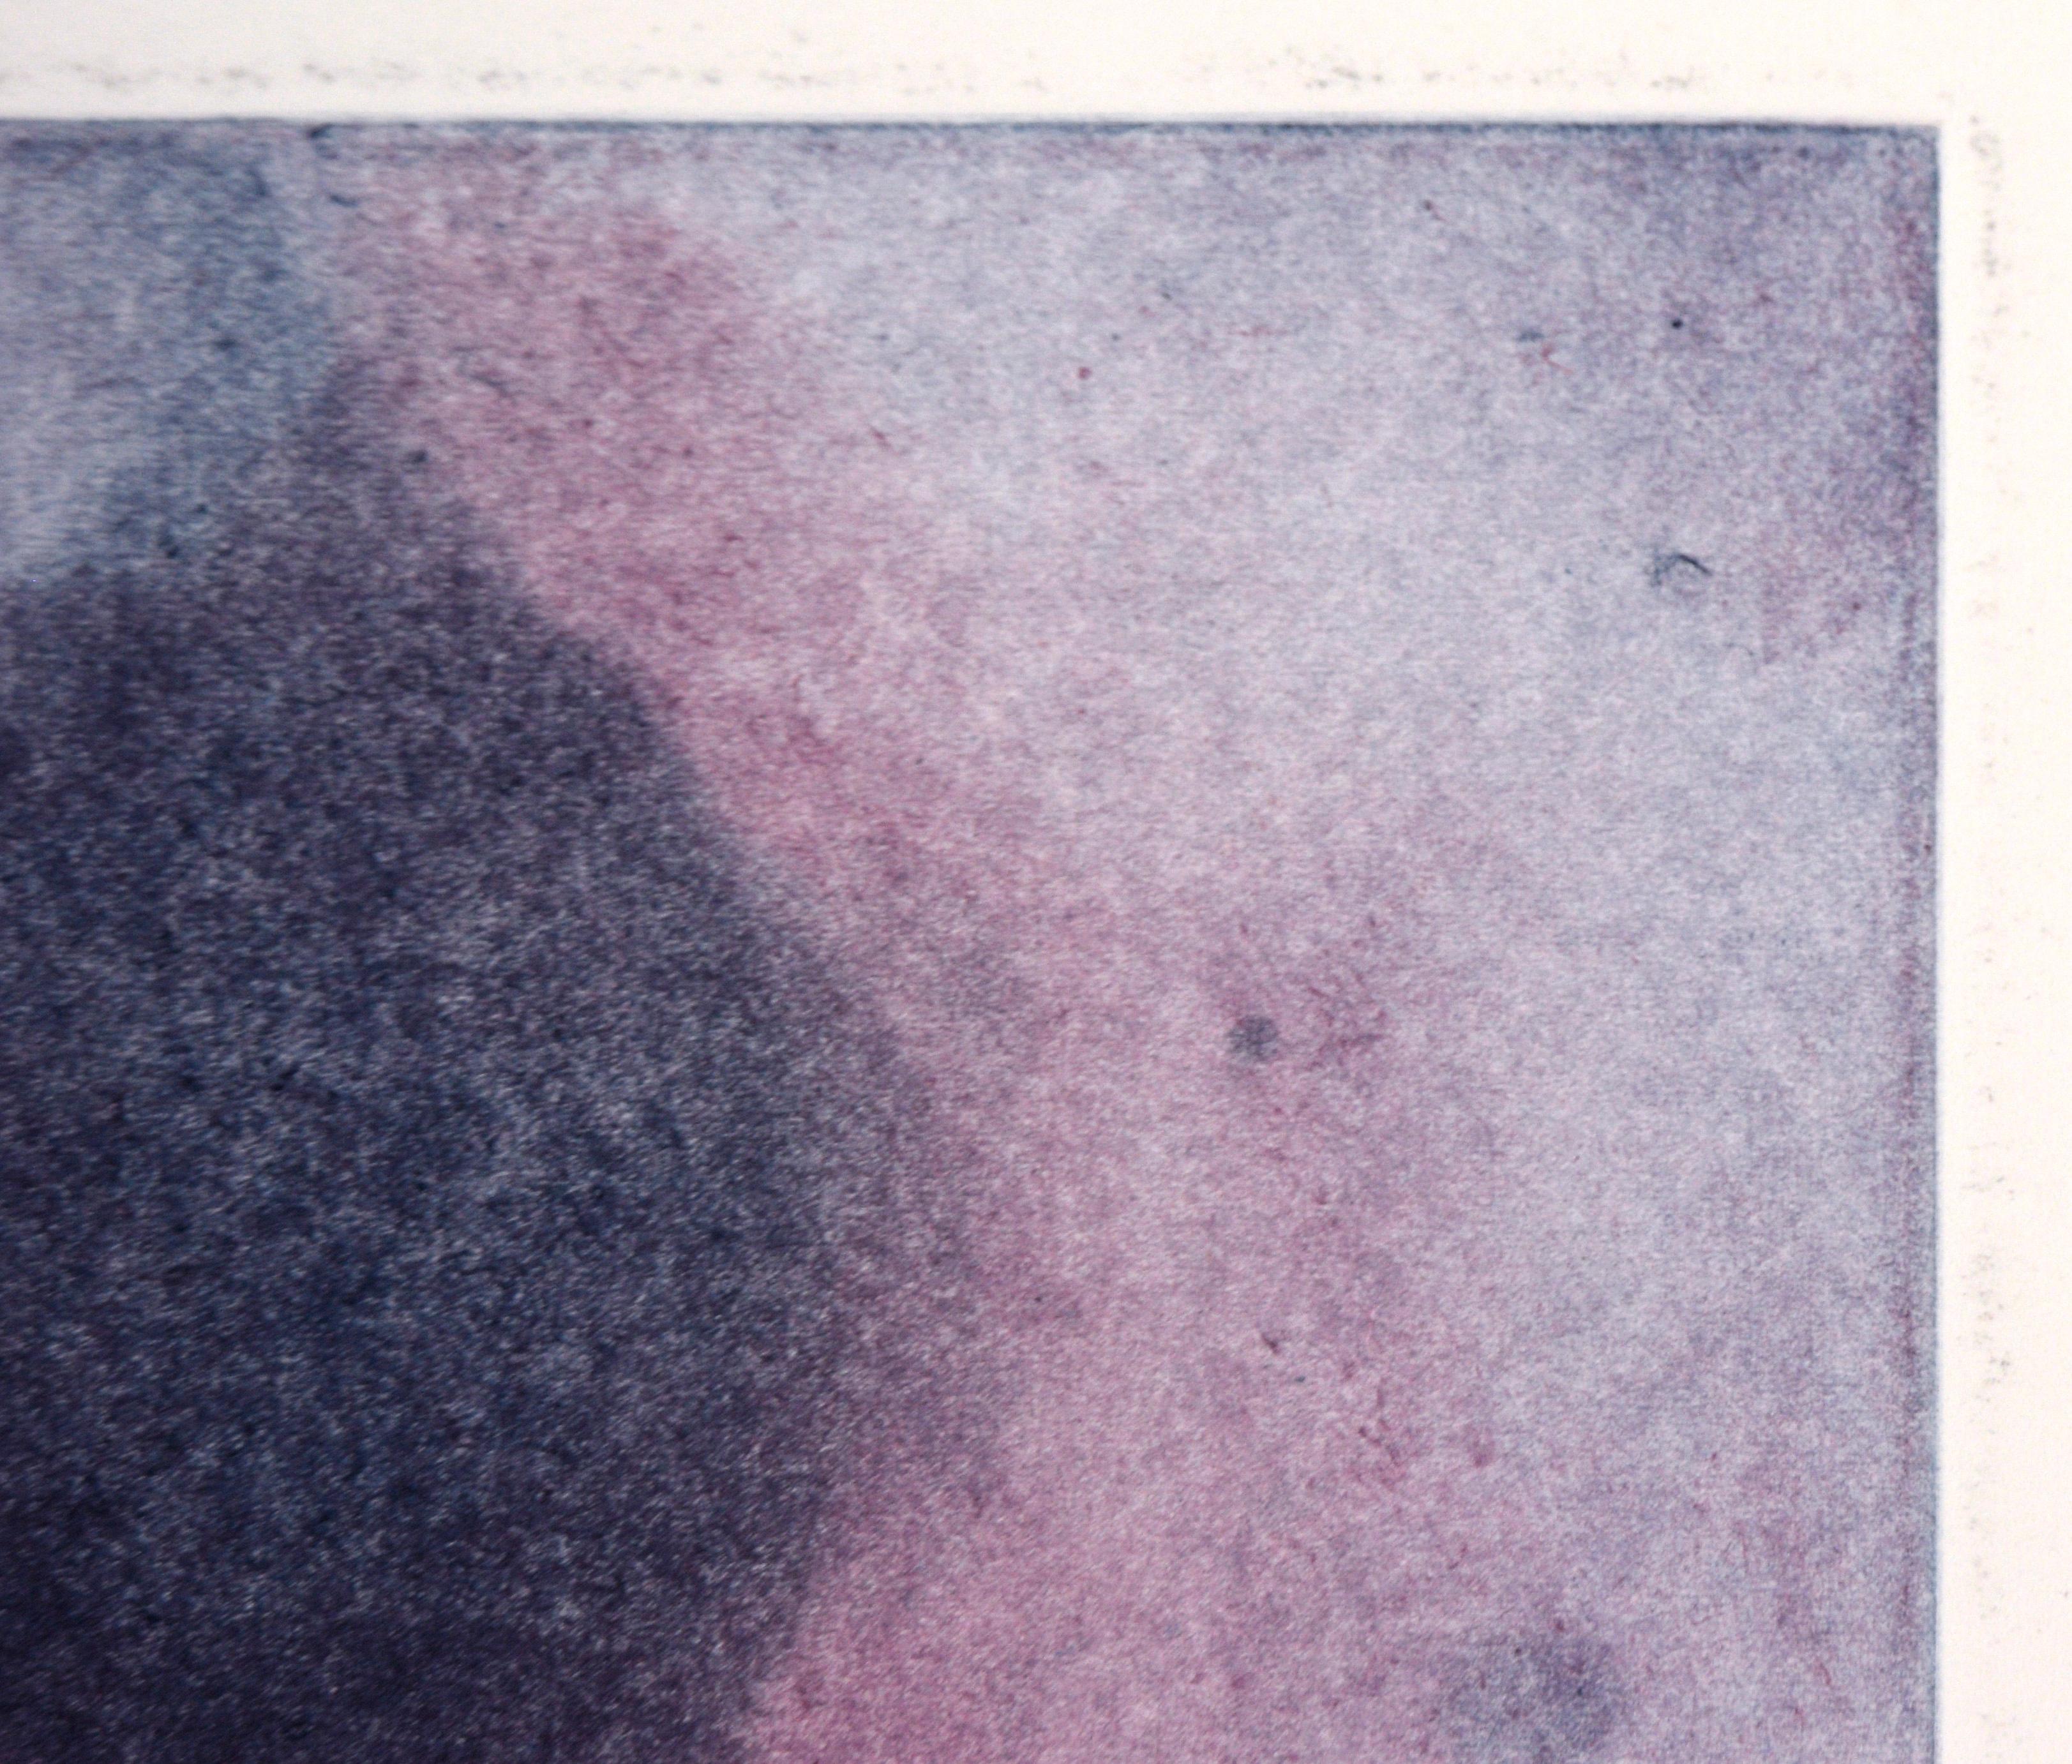 Lavendel Nebula – Transfer-Monogramm in Öl auf Papier

Original handgemalte und übertragene Monotypie der kalifornischen Künstlerin Heather Speck (Amerikanerin, 20. Jh.). Schichten von Blau, Violett und Magenta bilden eine abstrakte Form, die an